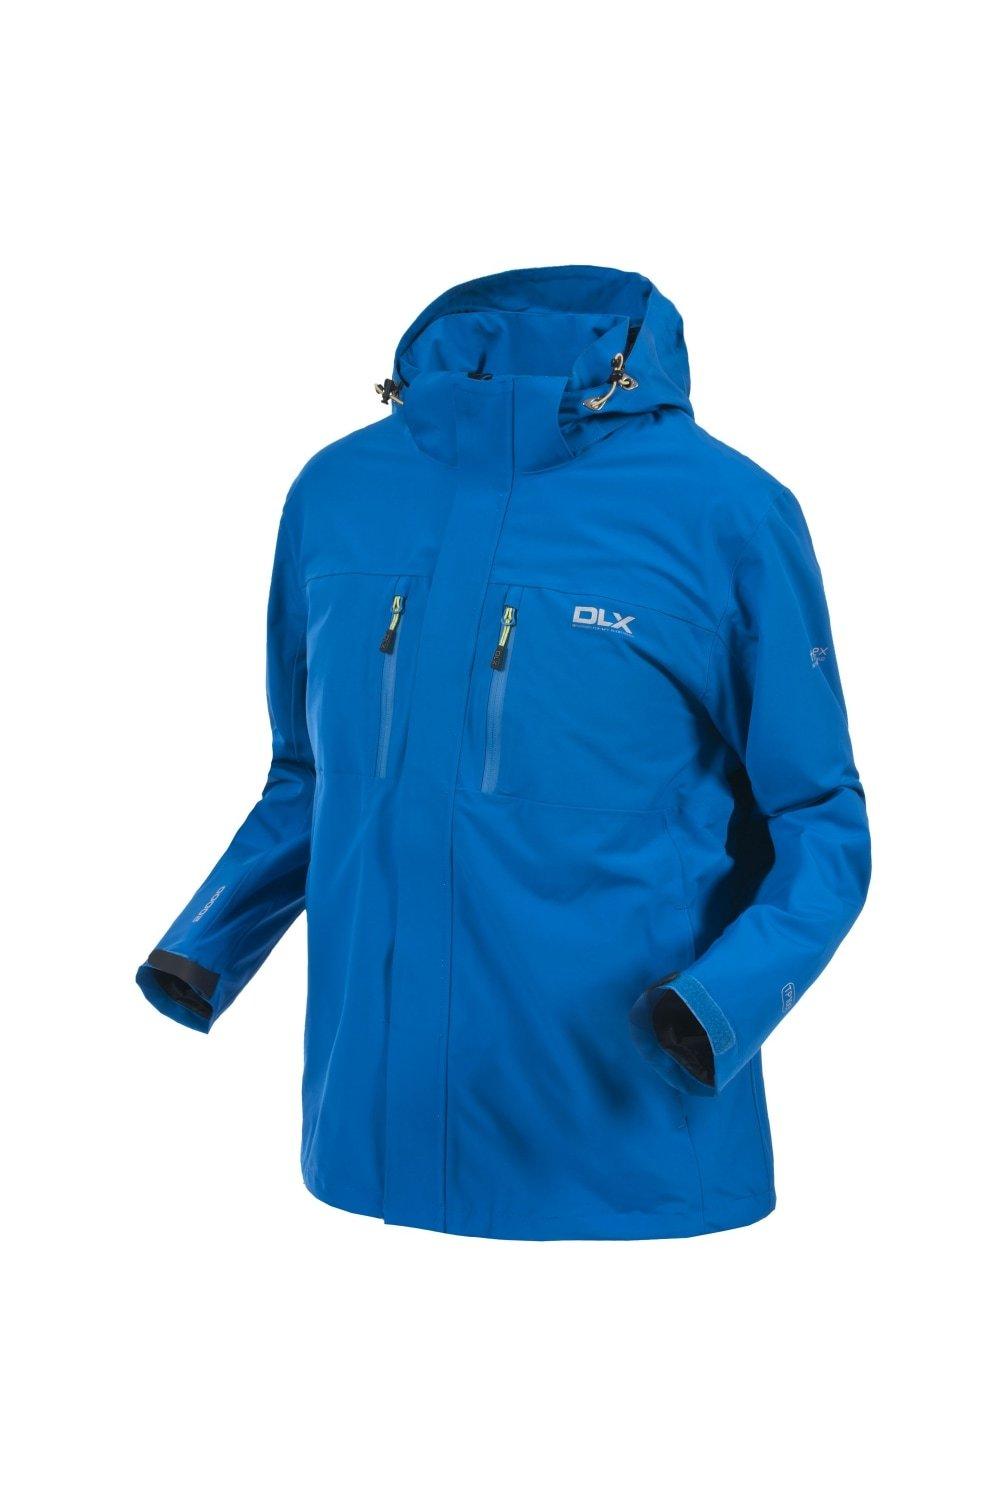 Jackets & Coats | Oswalt DLX Waterproof Jacket | Trespass